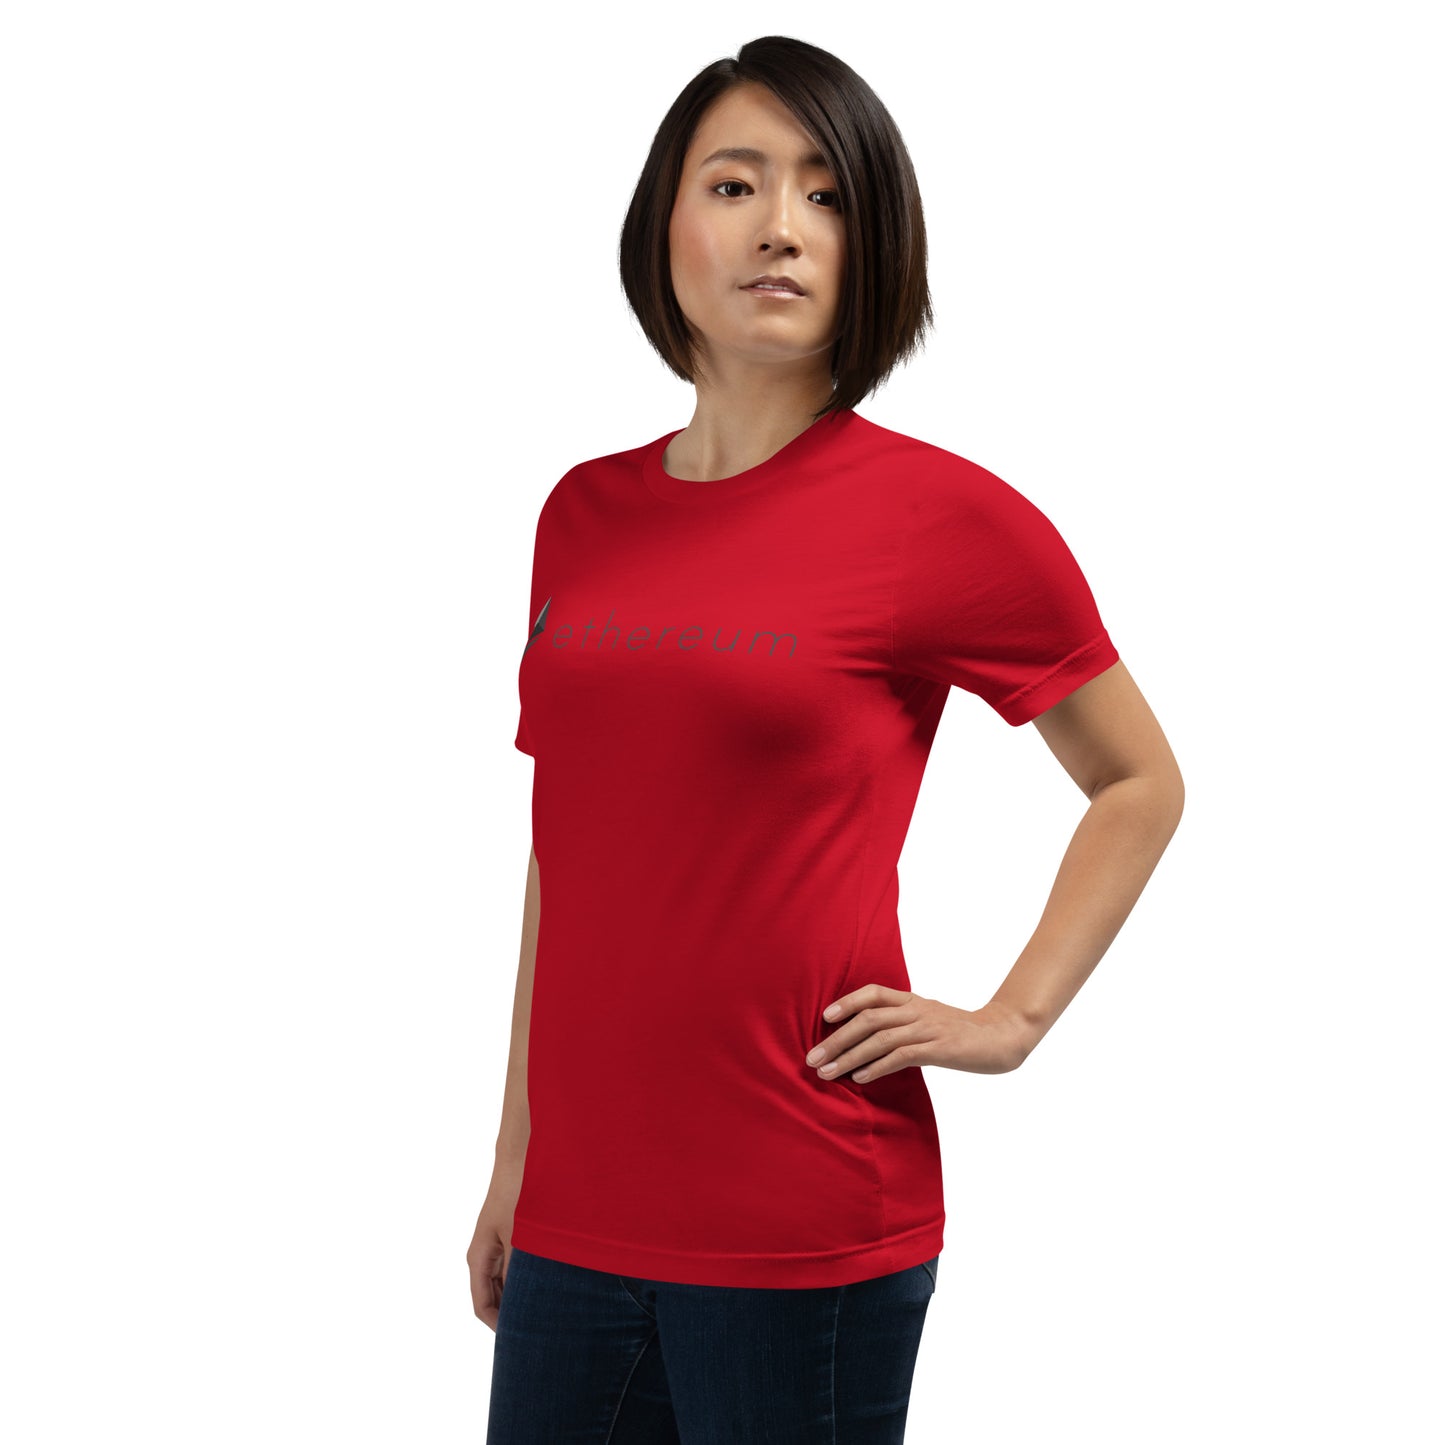 Ethereum Women's T-shirt